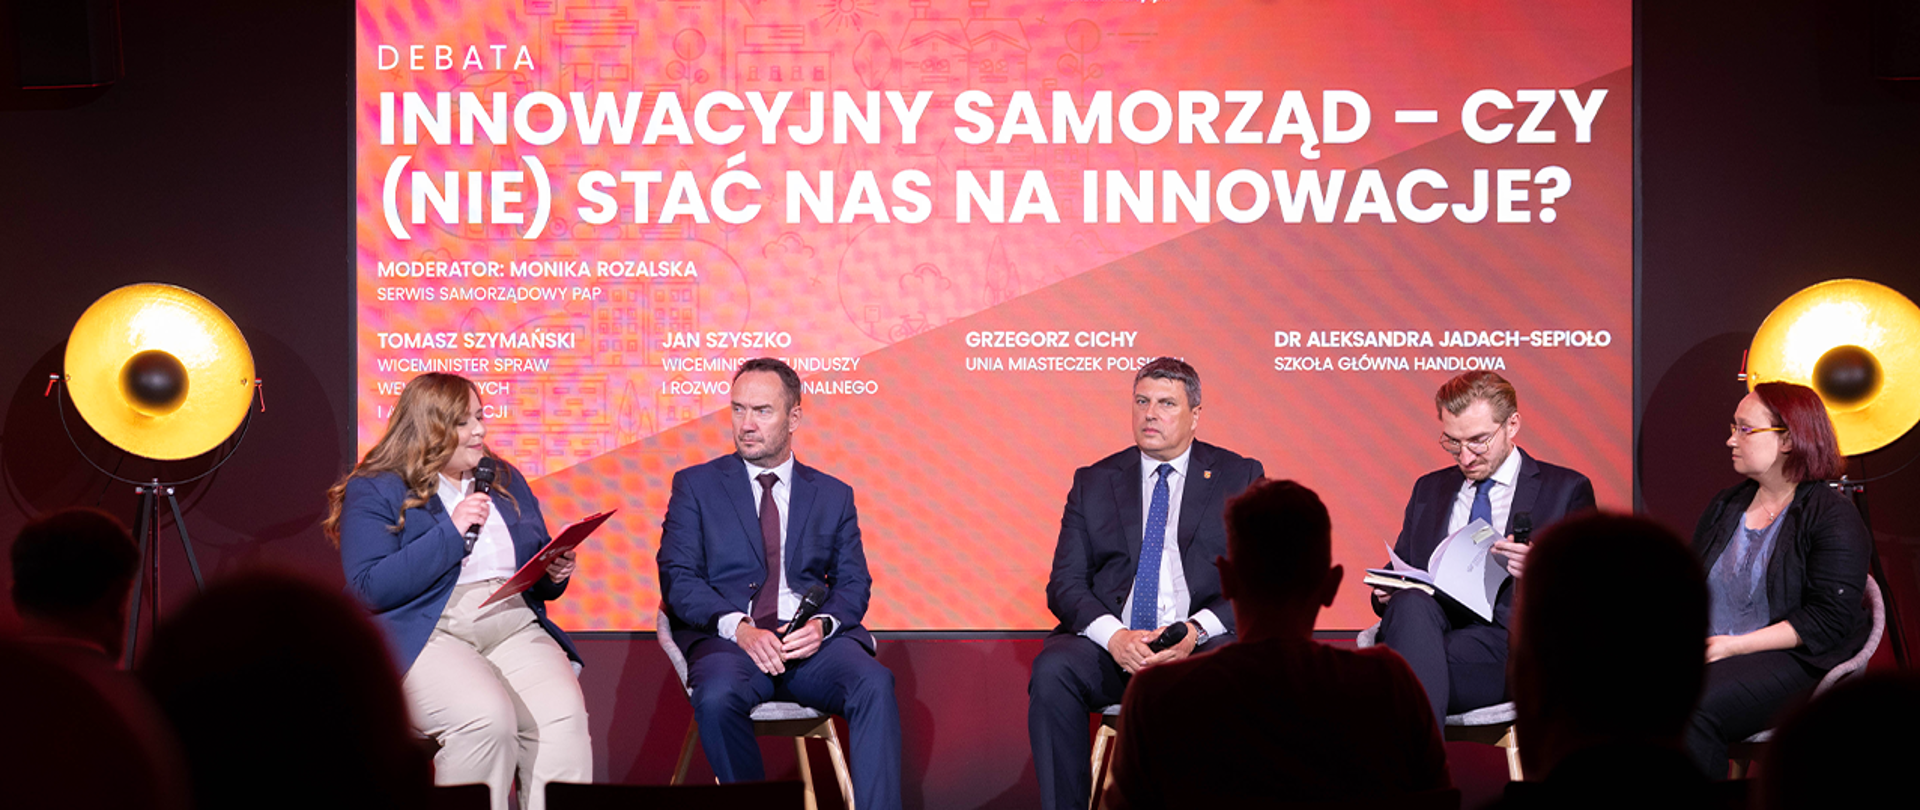 Grupa osób siedzi na scenie. Wśród nich jest wiceminister Tomasz Szymański. W tle czerwony ekran z napisem Innowacyjny samorząd – czy (nie) stać nas na innowacje? - debata